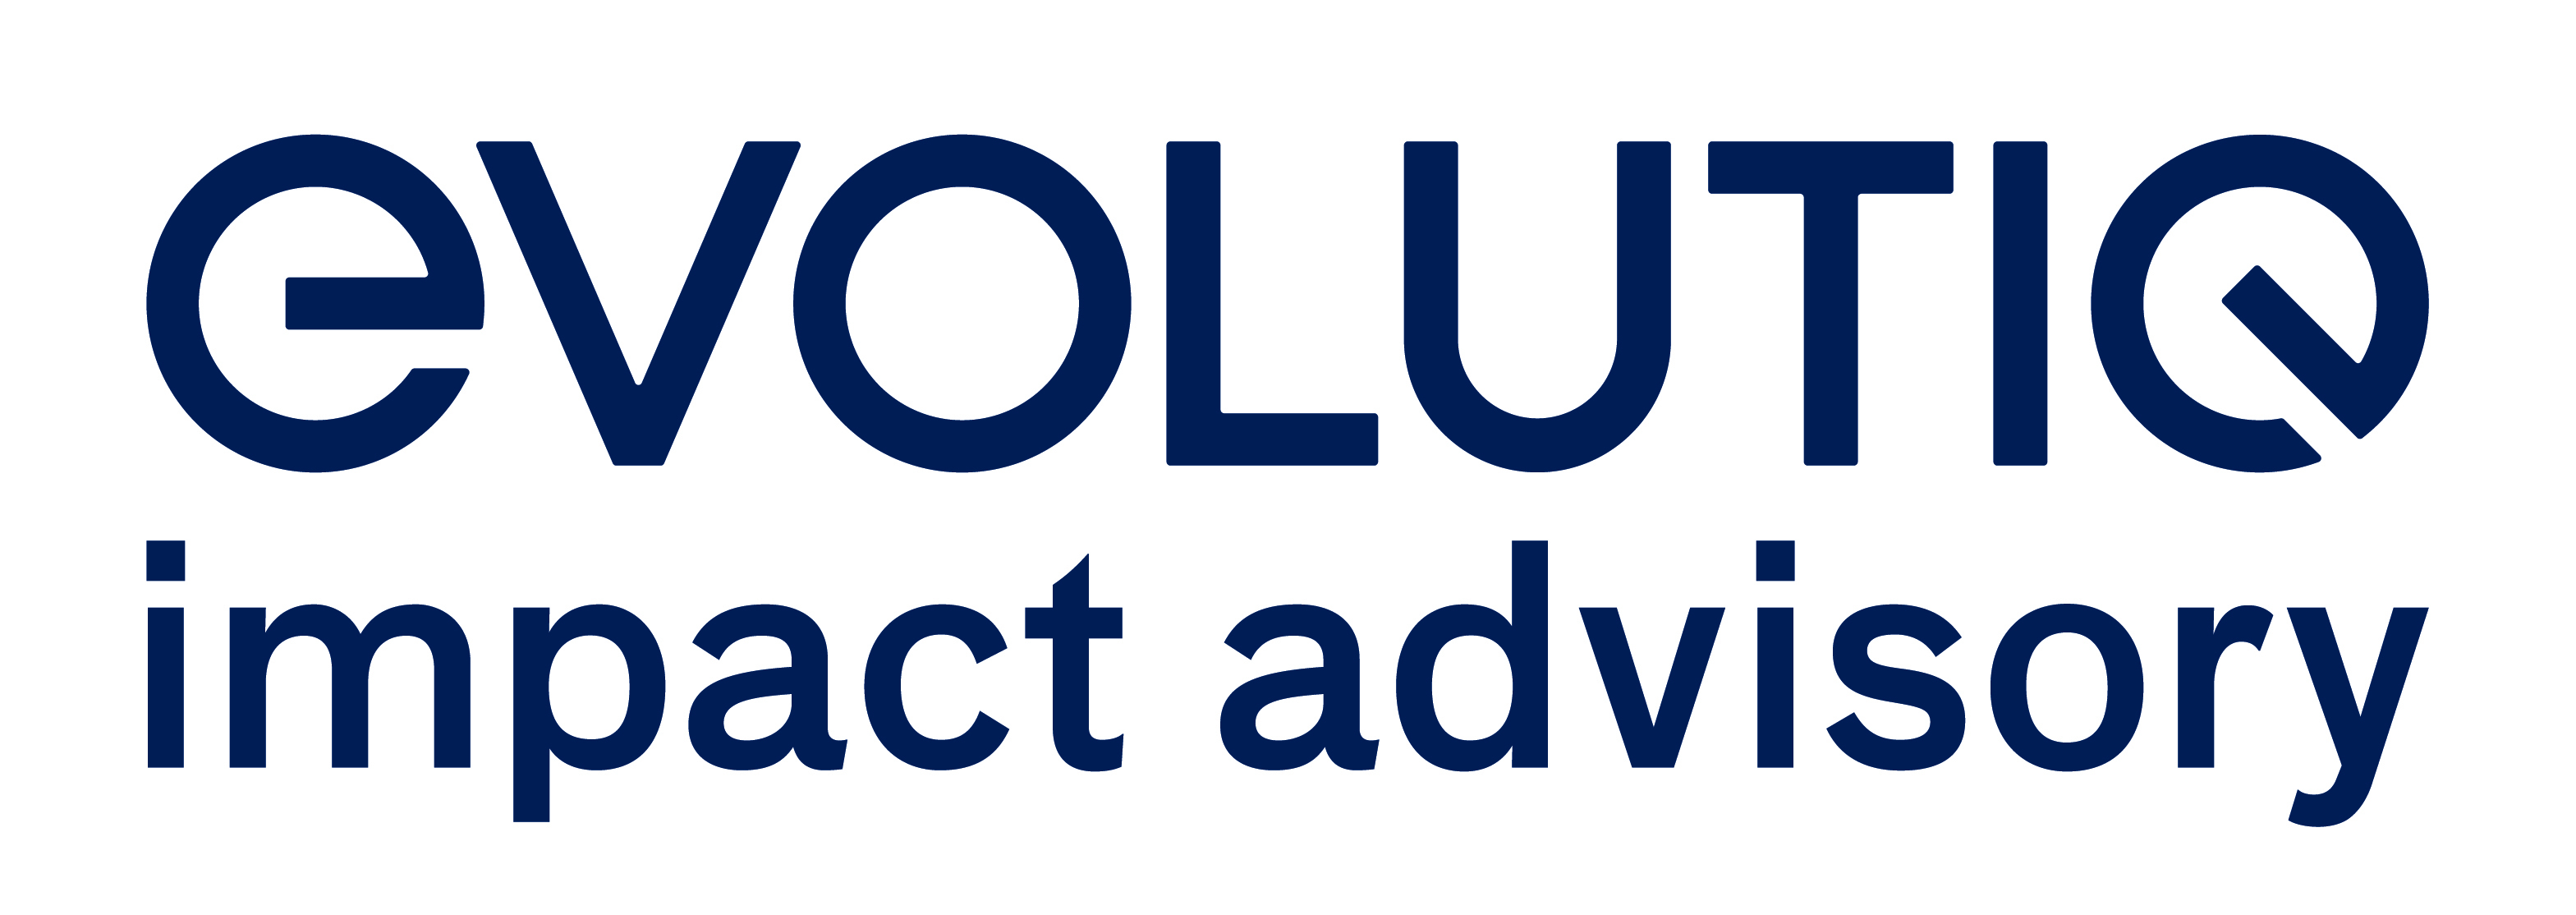 Evolutiq markenarchitektur logo ia cmyk 03 evolutiq impact advisory basis 2